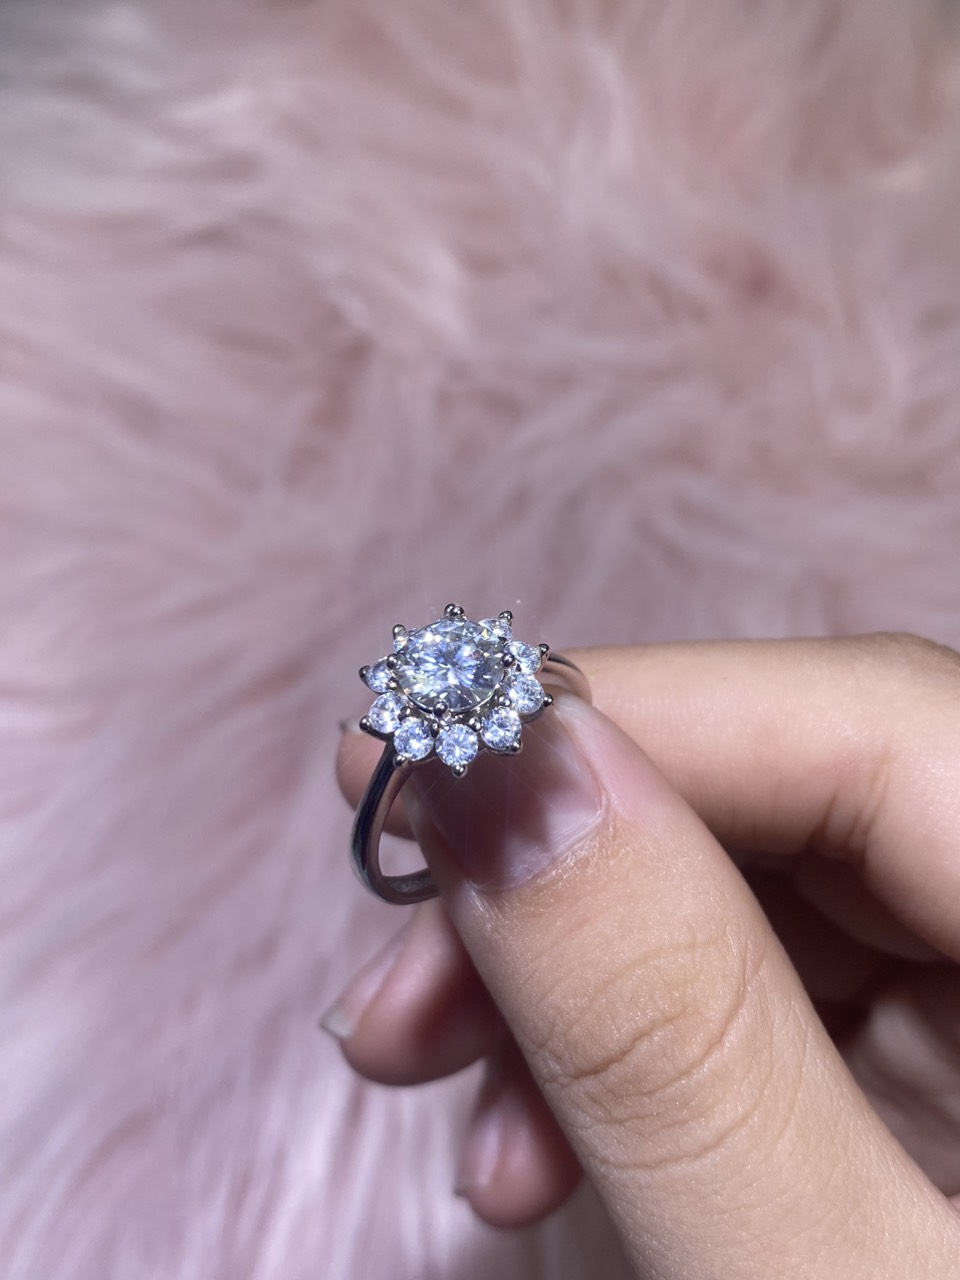 Phụ kiện đeo ngón tay Bạc 925 Kim cương nhân tao Moissanite 2.0carat 8.0mm